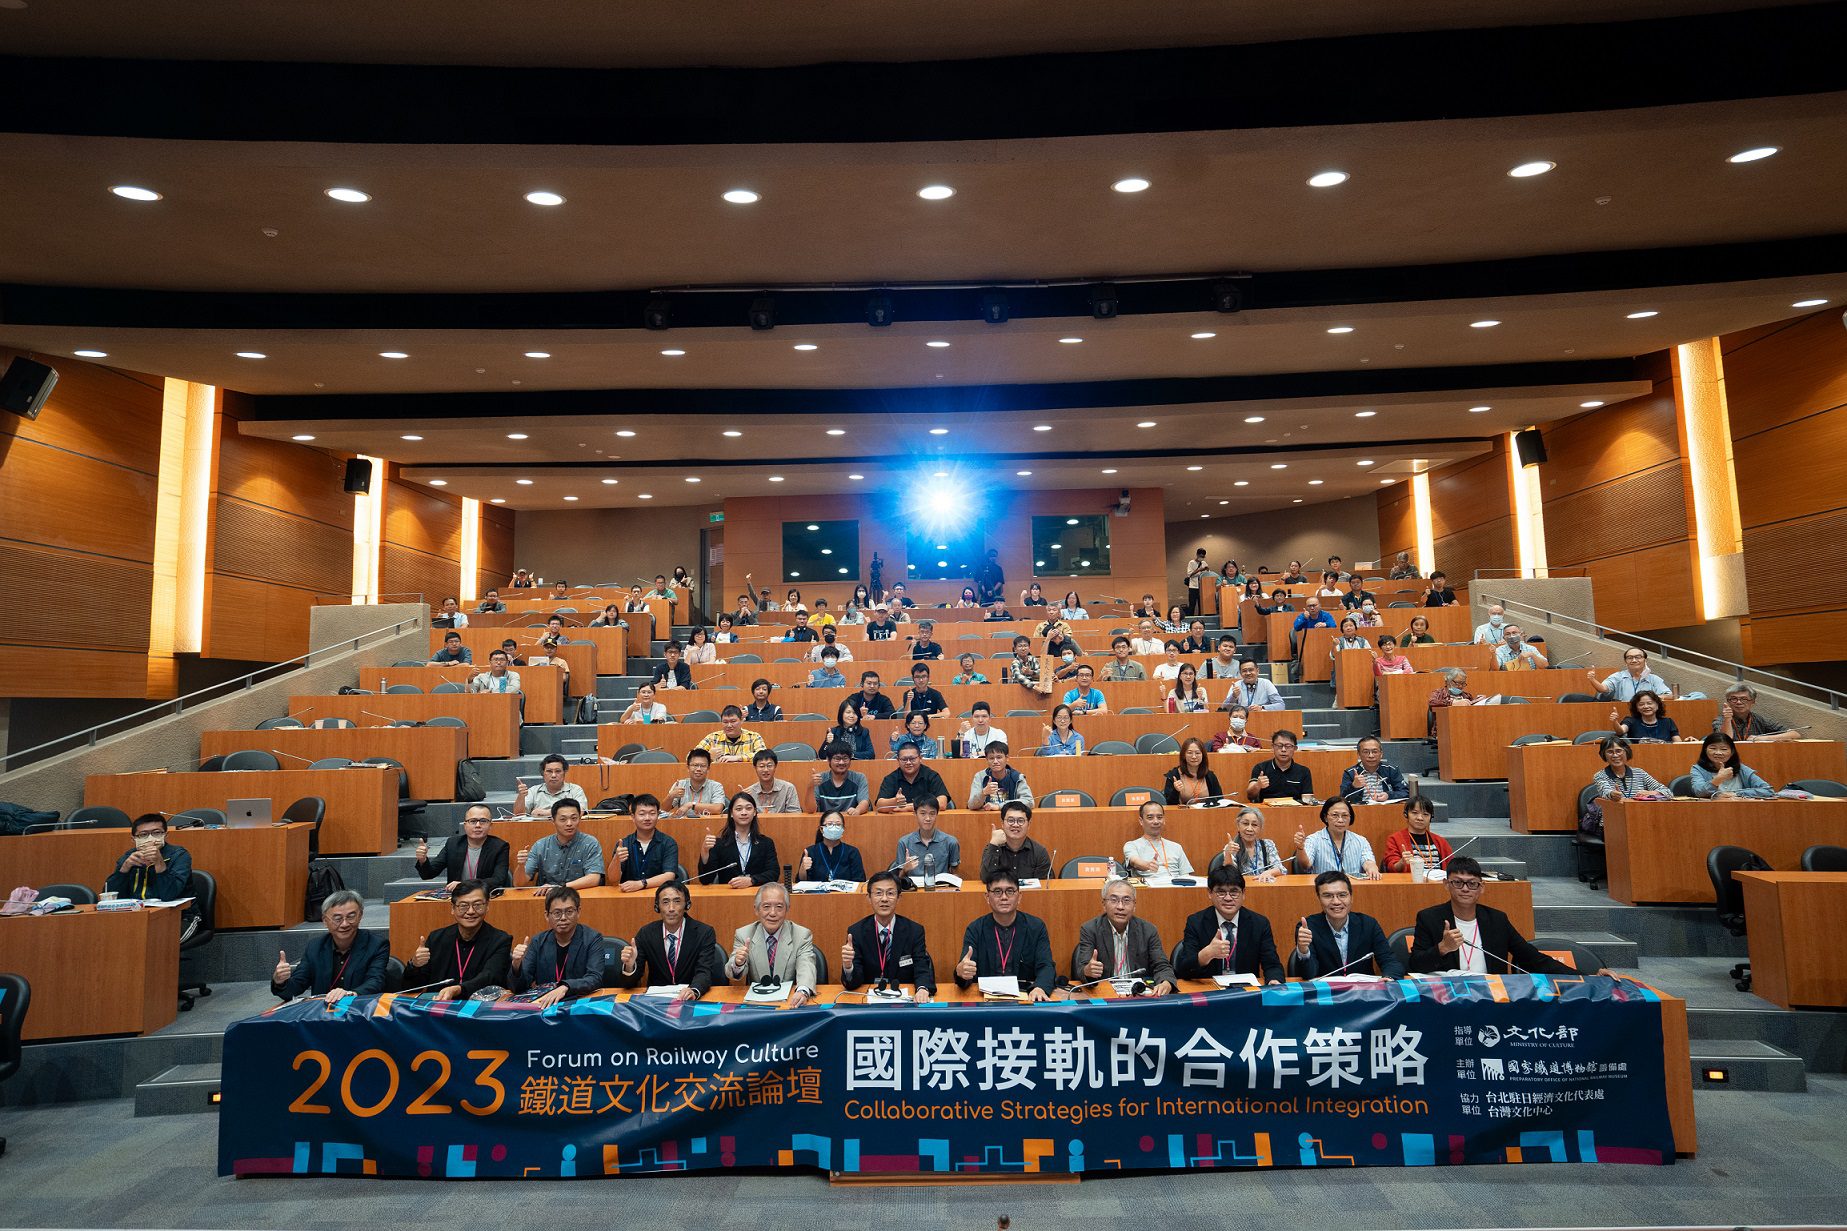 2023鐵道文化交流論壇接軌國際 邀請日本鐵道博物館與會分享 - 早安台灣新聞 | Morning Taiwan News